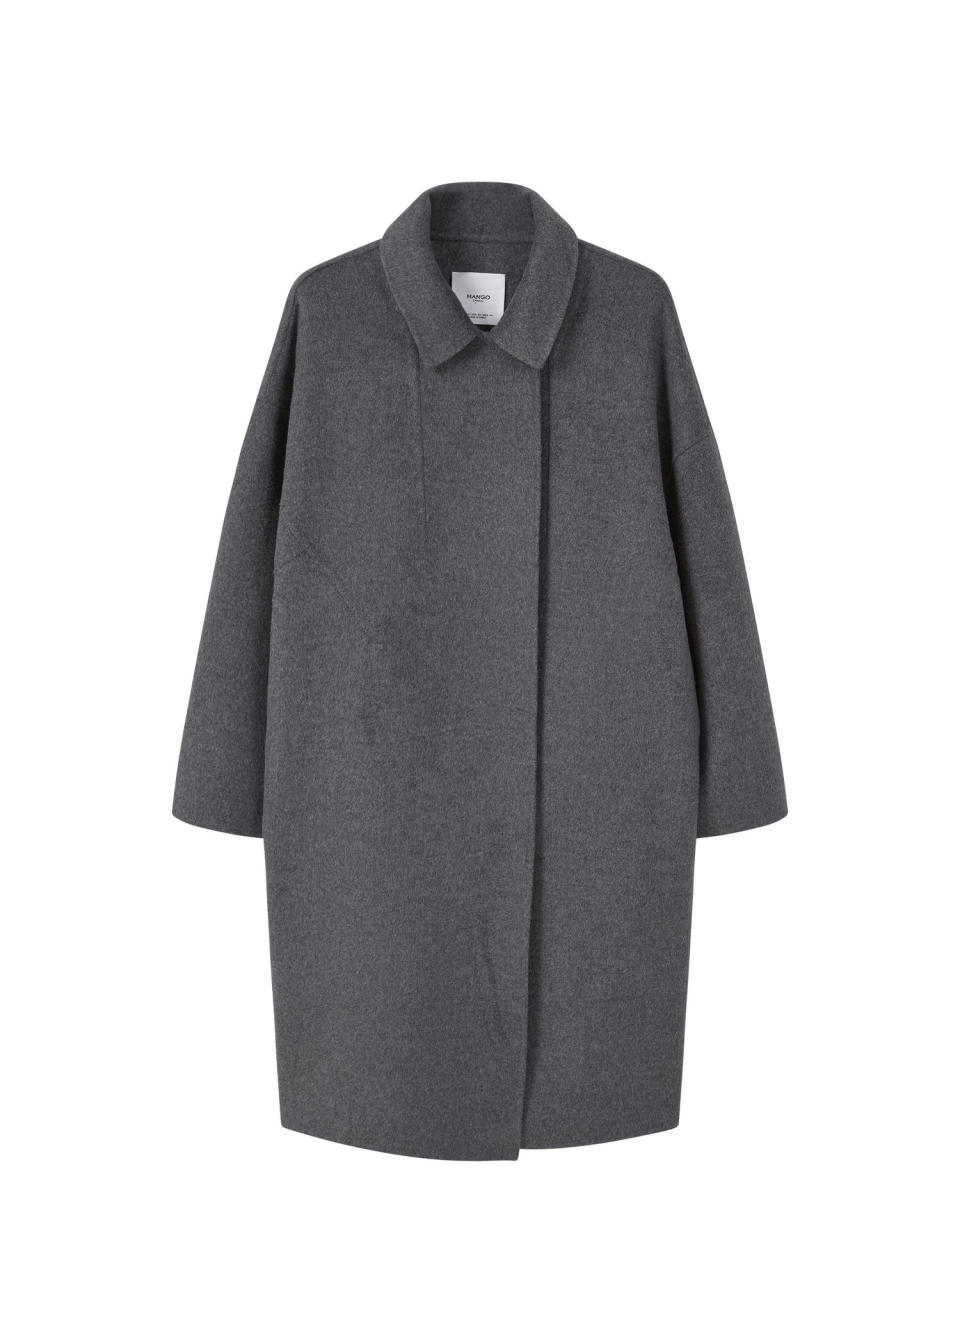 Oversized grey coat